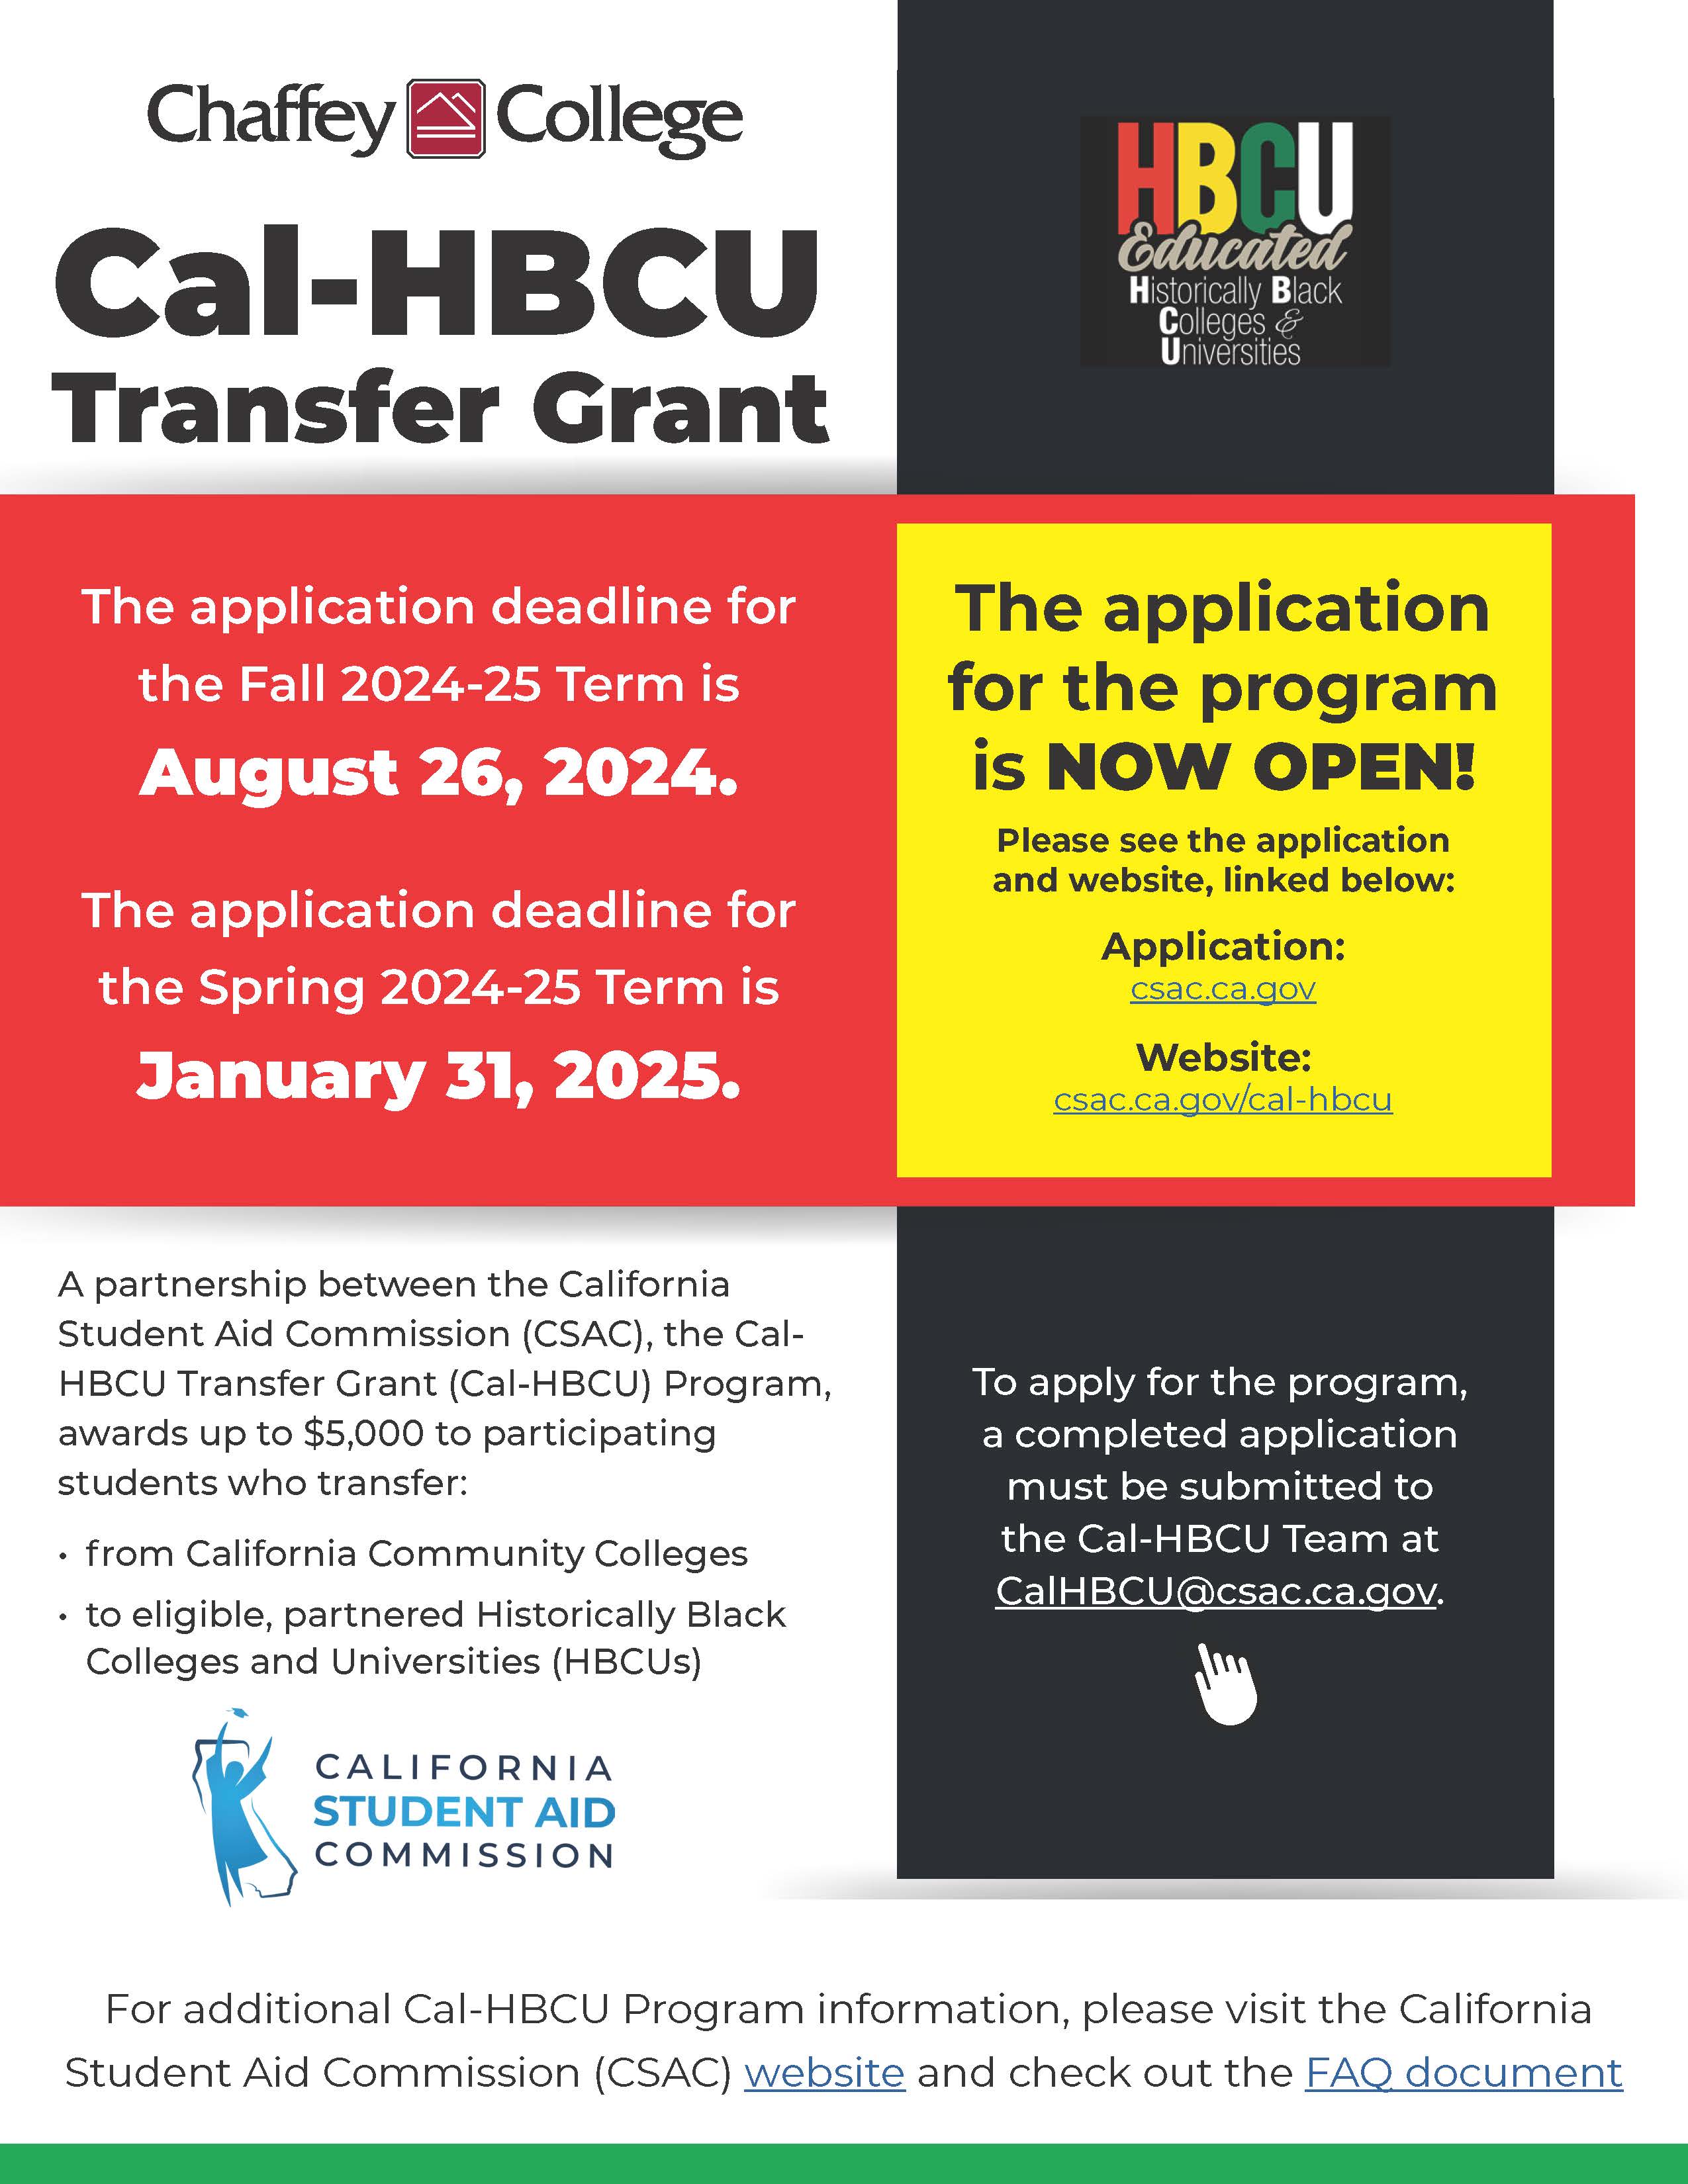 Cal-HBCU Transfer Grant